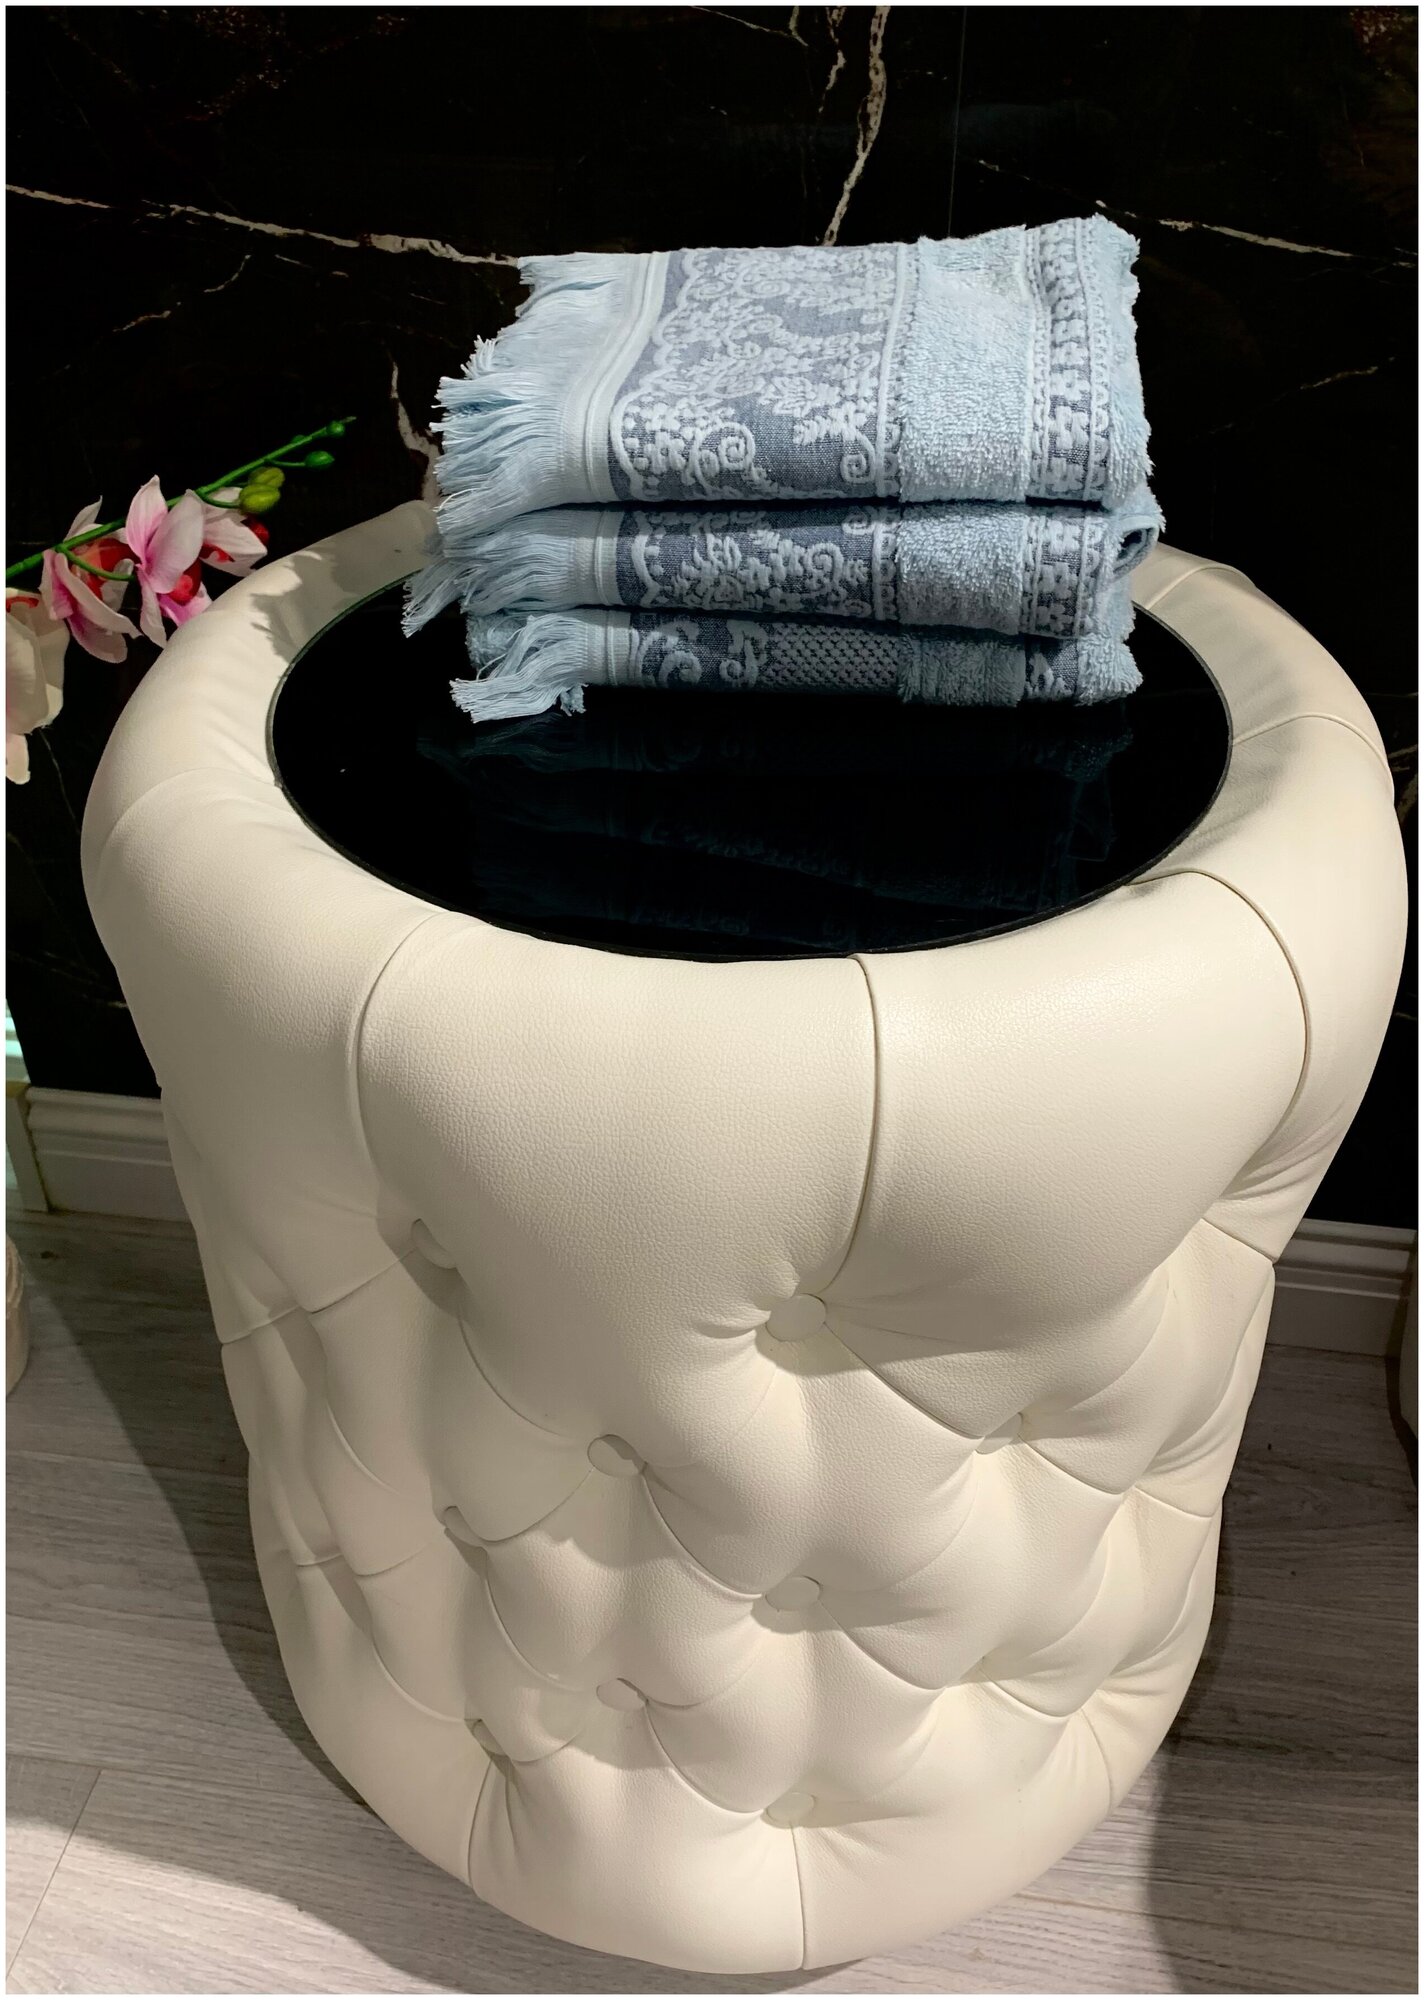 EVRAHOME Турецкое полотенце премиум класса 100% хлопок натуральное без примесей набор 10 шт, подарки на 8 марта - фотография № 2